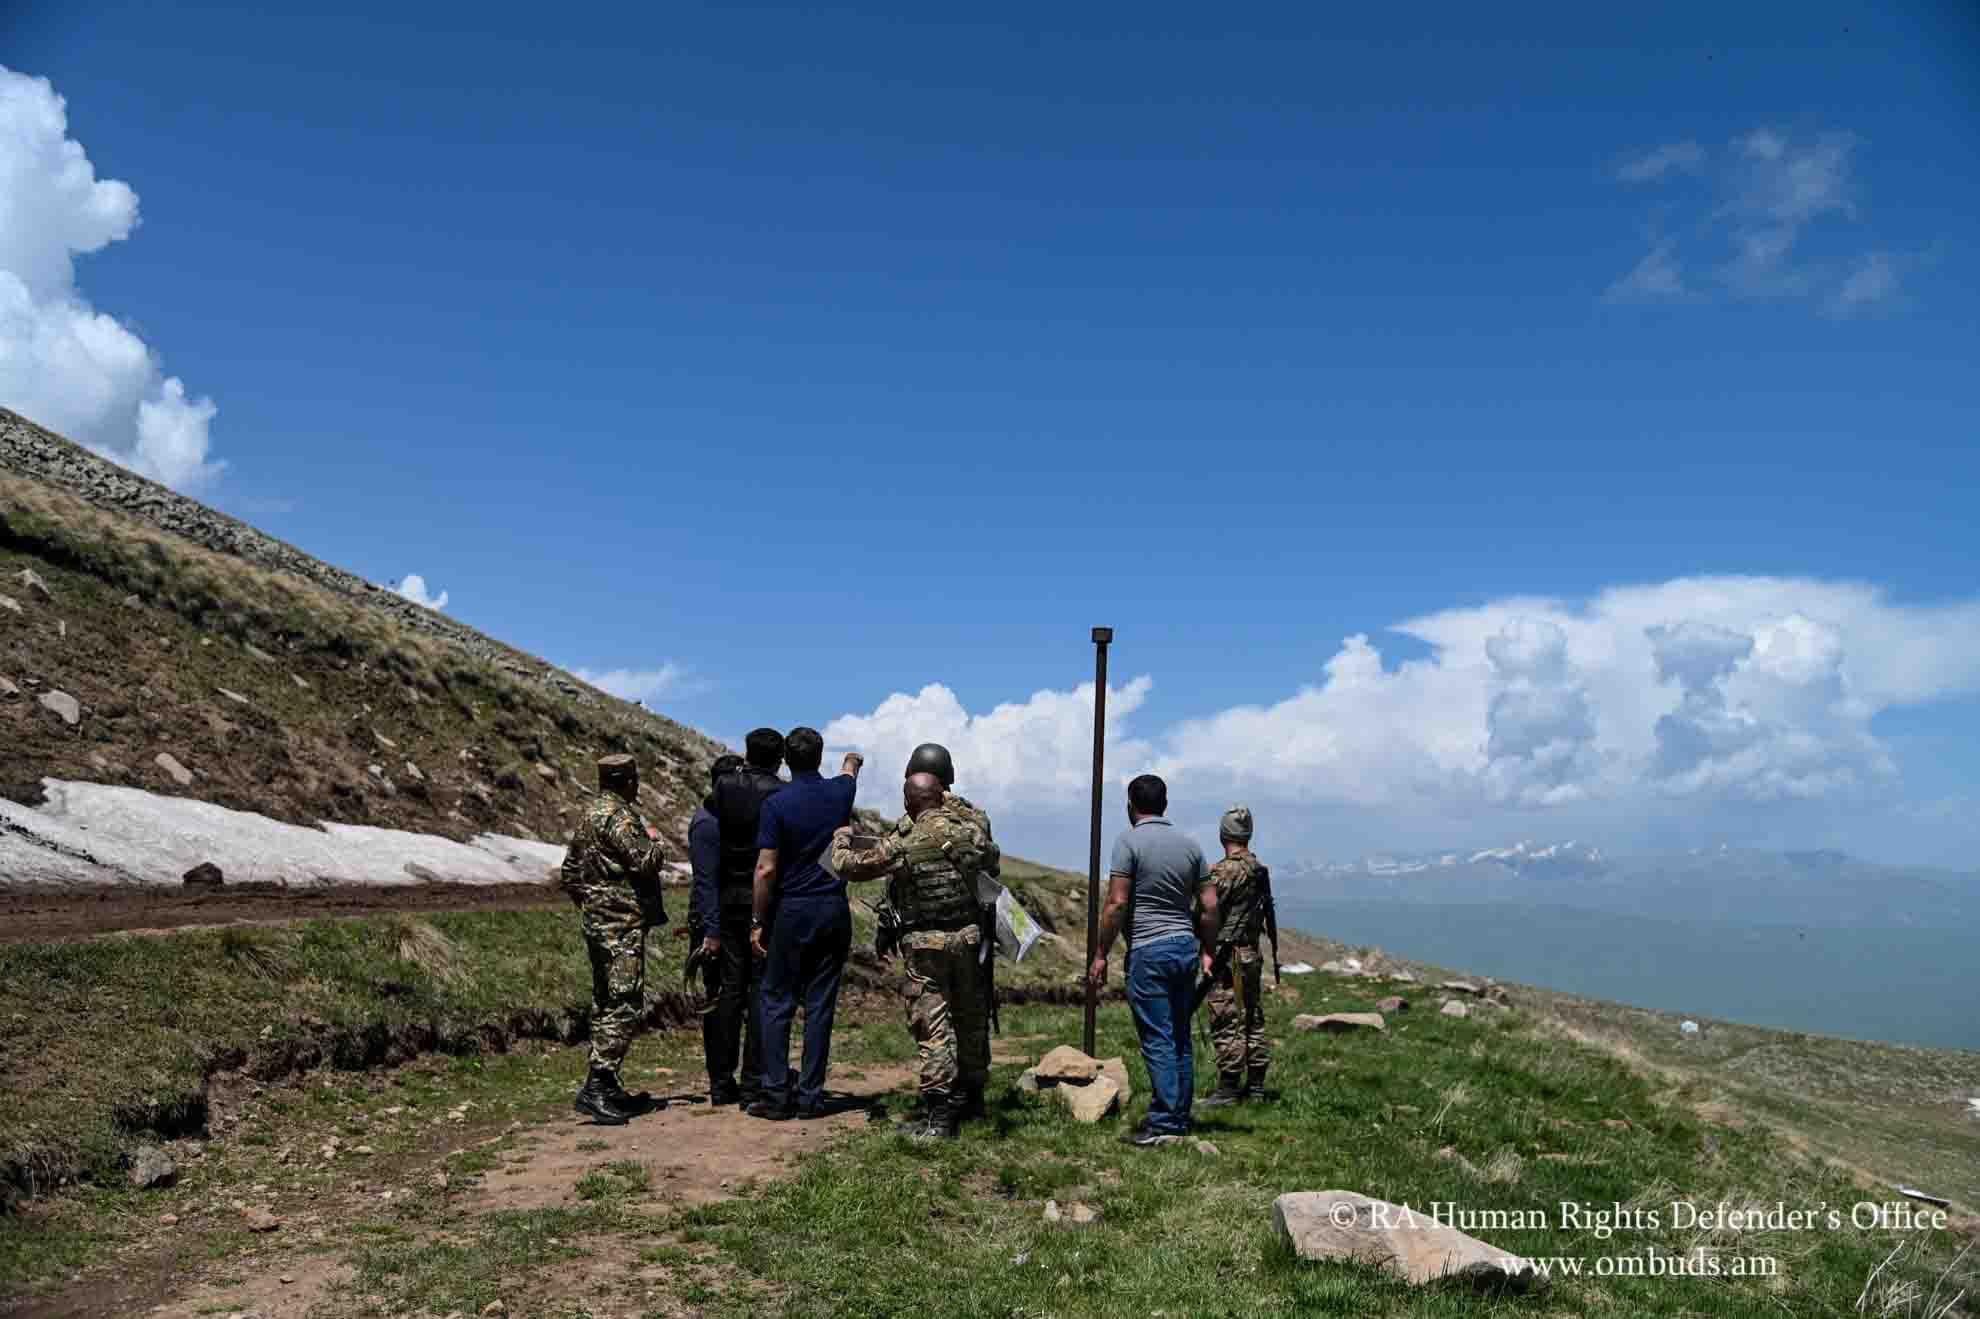 Σύνορα Αρμενίας-Αζερμπαϊτζάν: Η Ουάσινγκτον «παρακολουθεί στενά» τη νέα ένταση